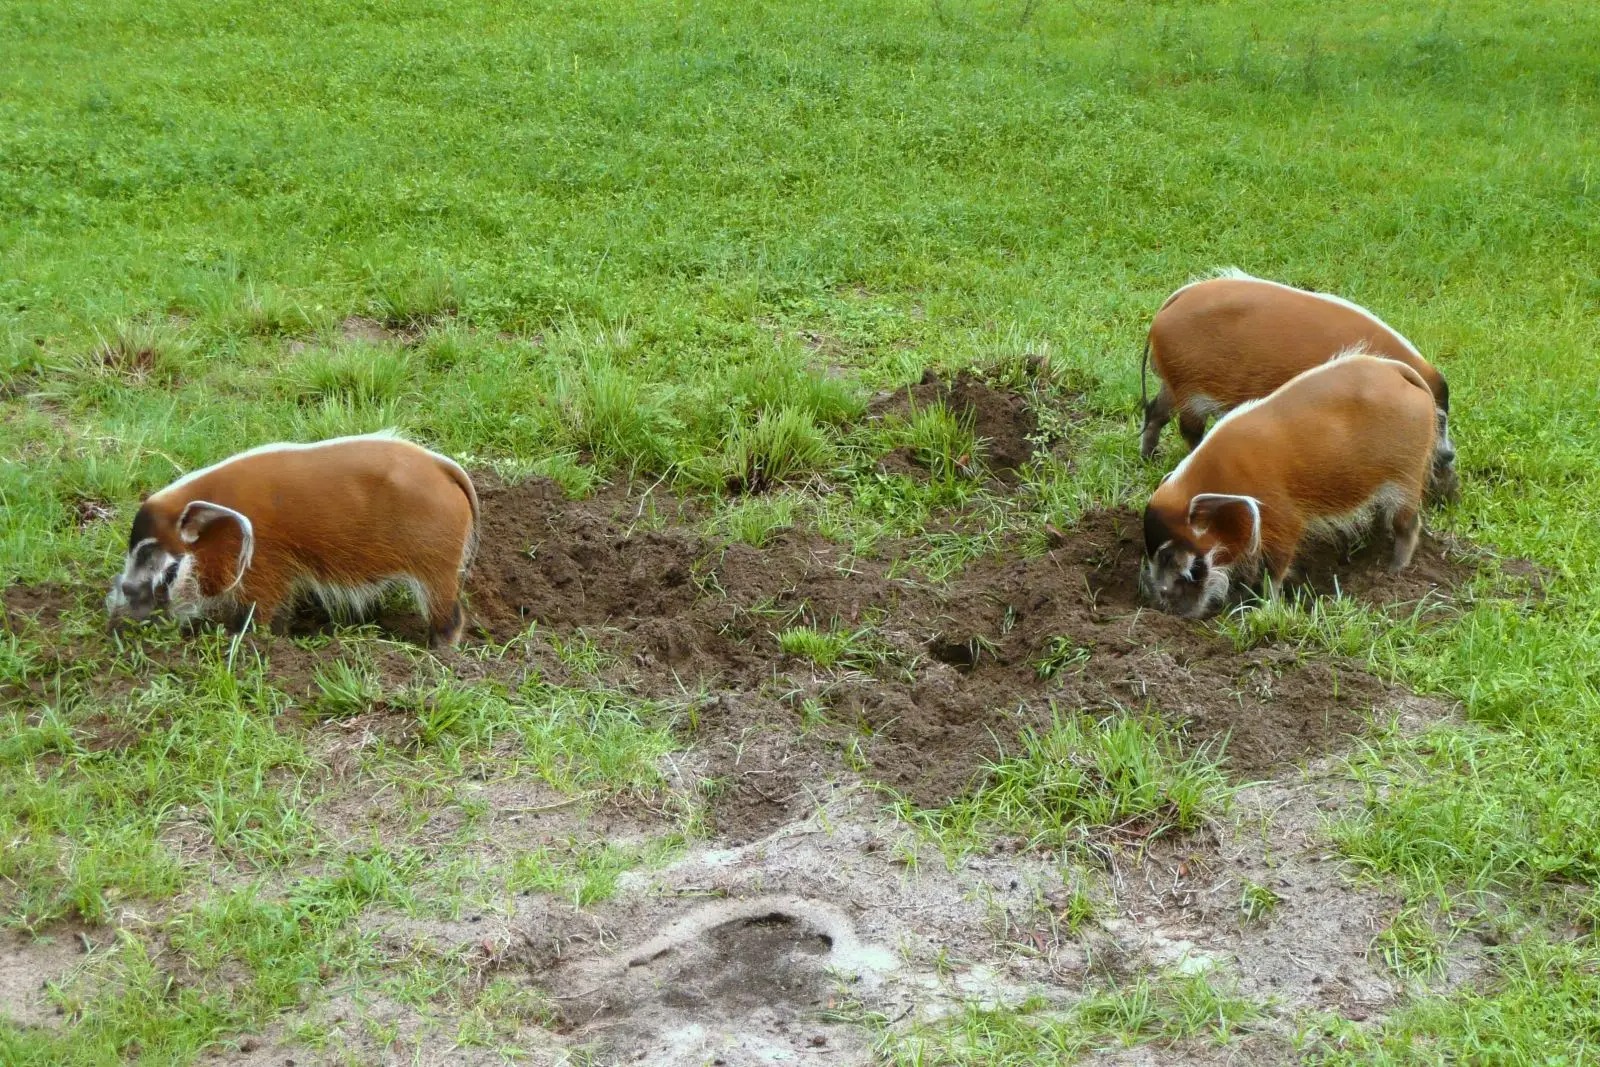 Red river hog: Loài lợn bảnh bao nhất thiên nhiên